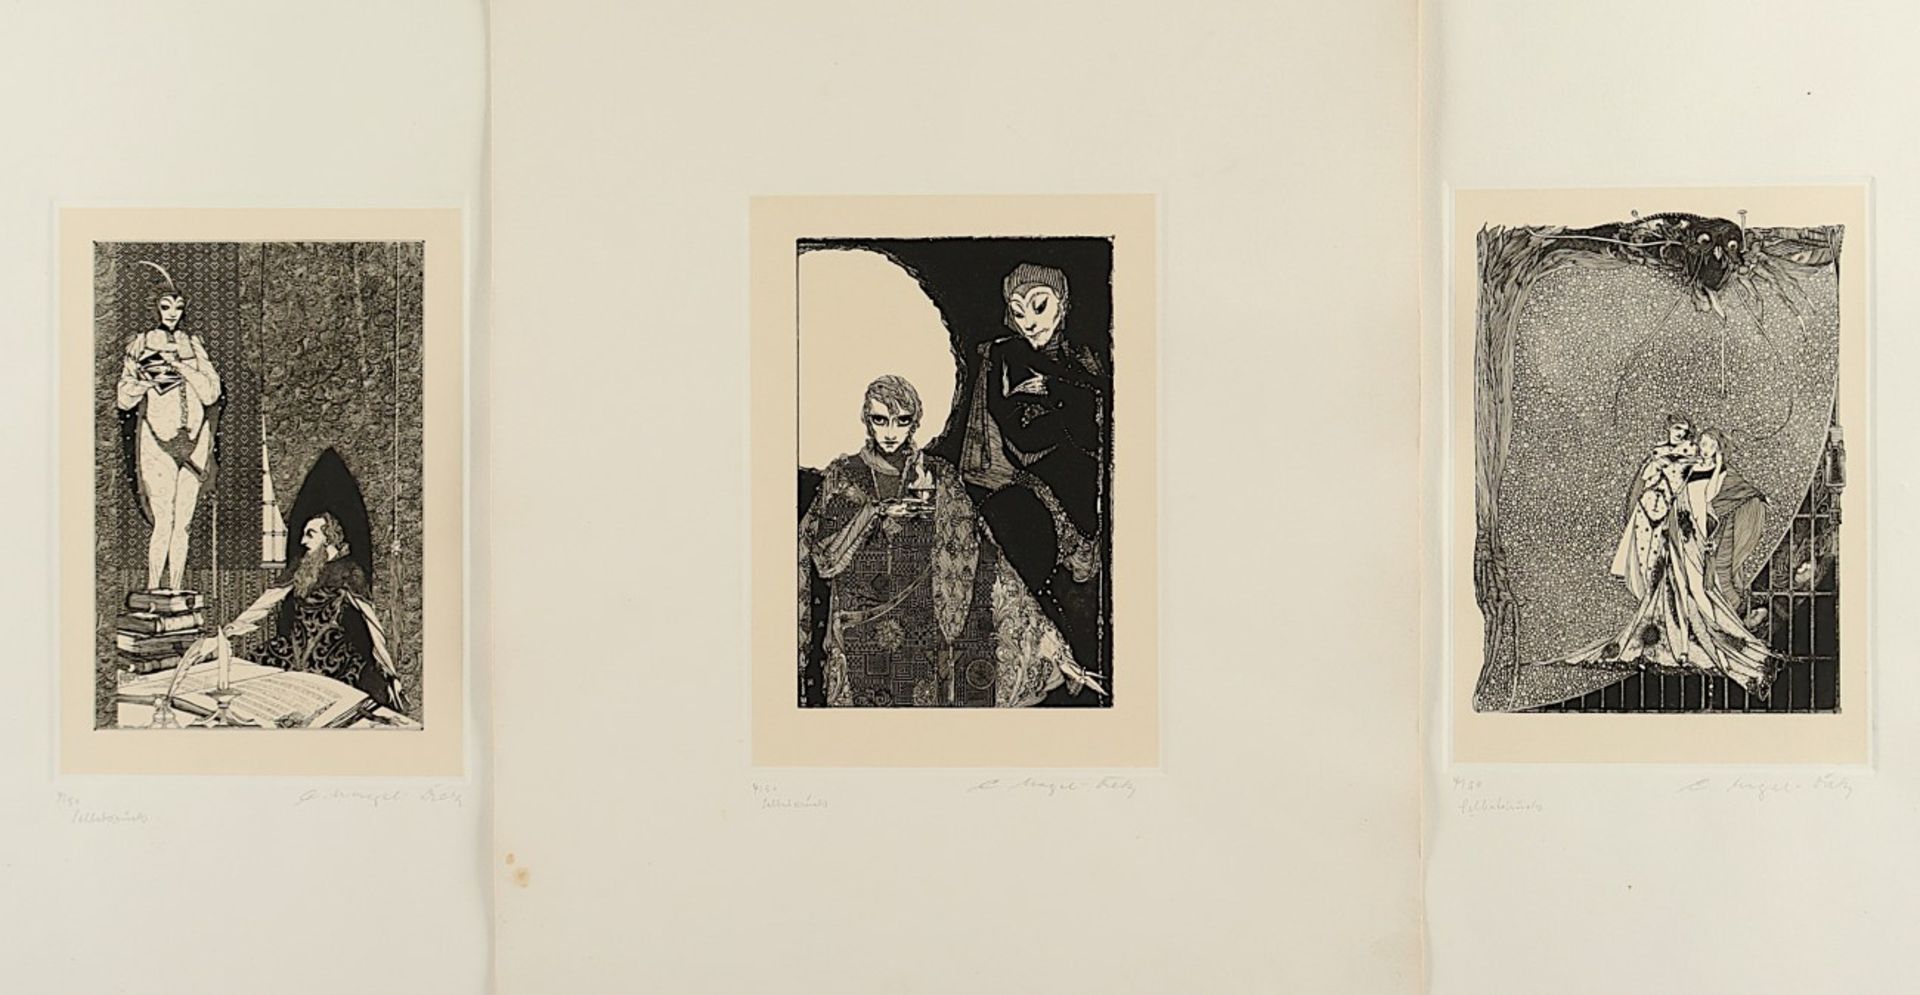 NAGEL-DIEK, Carl, sechs Blätter, u.a. "Mephisto erscheint dem alten Faust", Original-Radierungen, 2 - Image 2 of 2